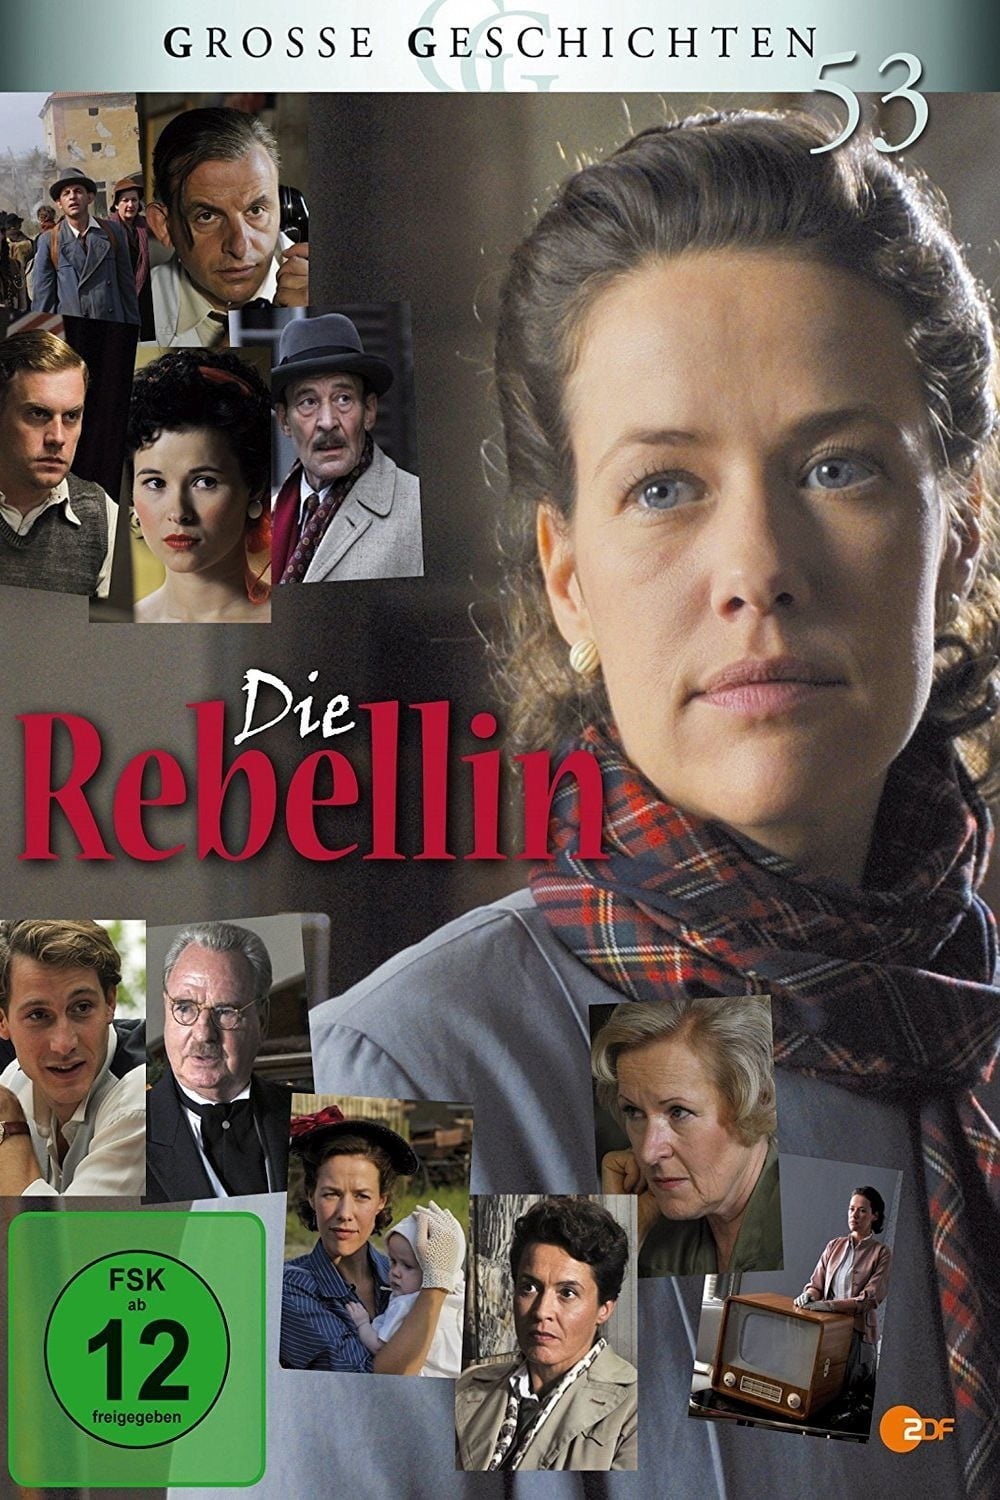 Die Rebellin (2009)